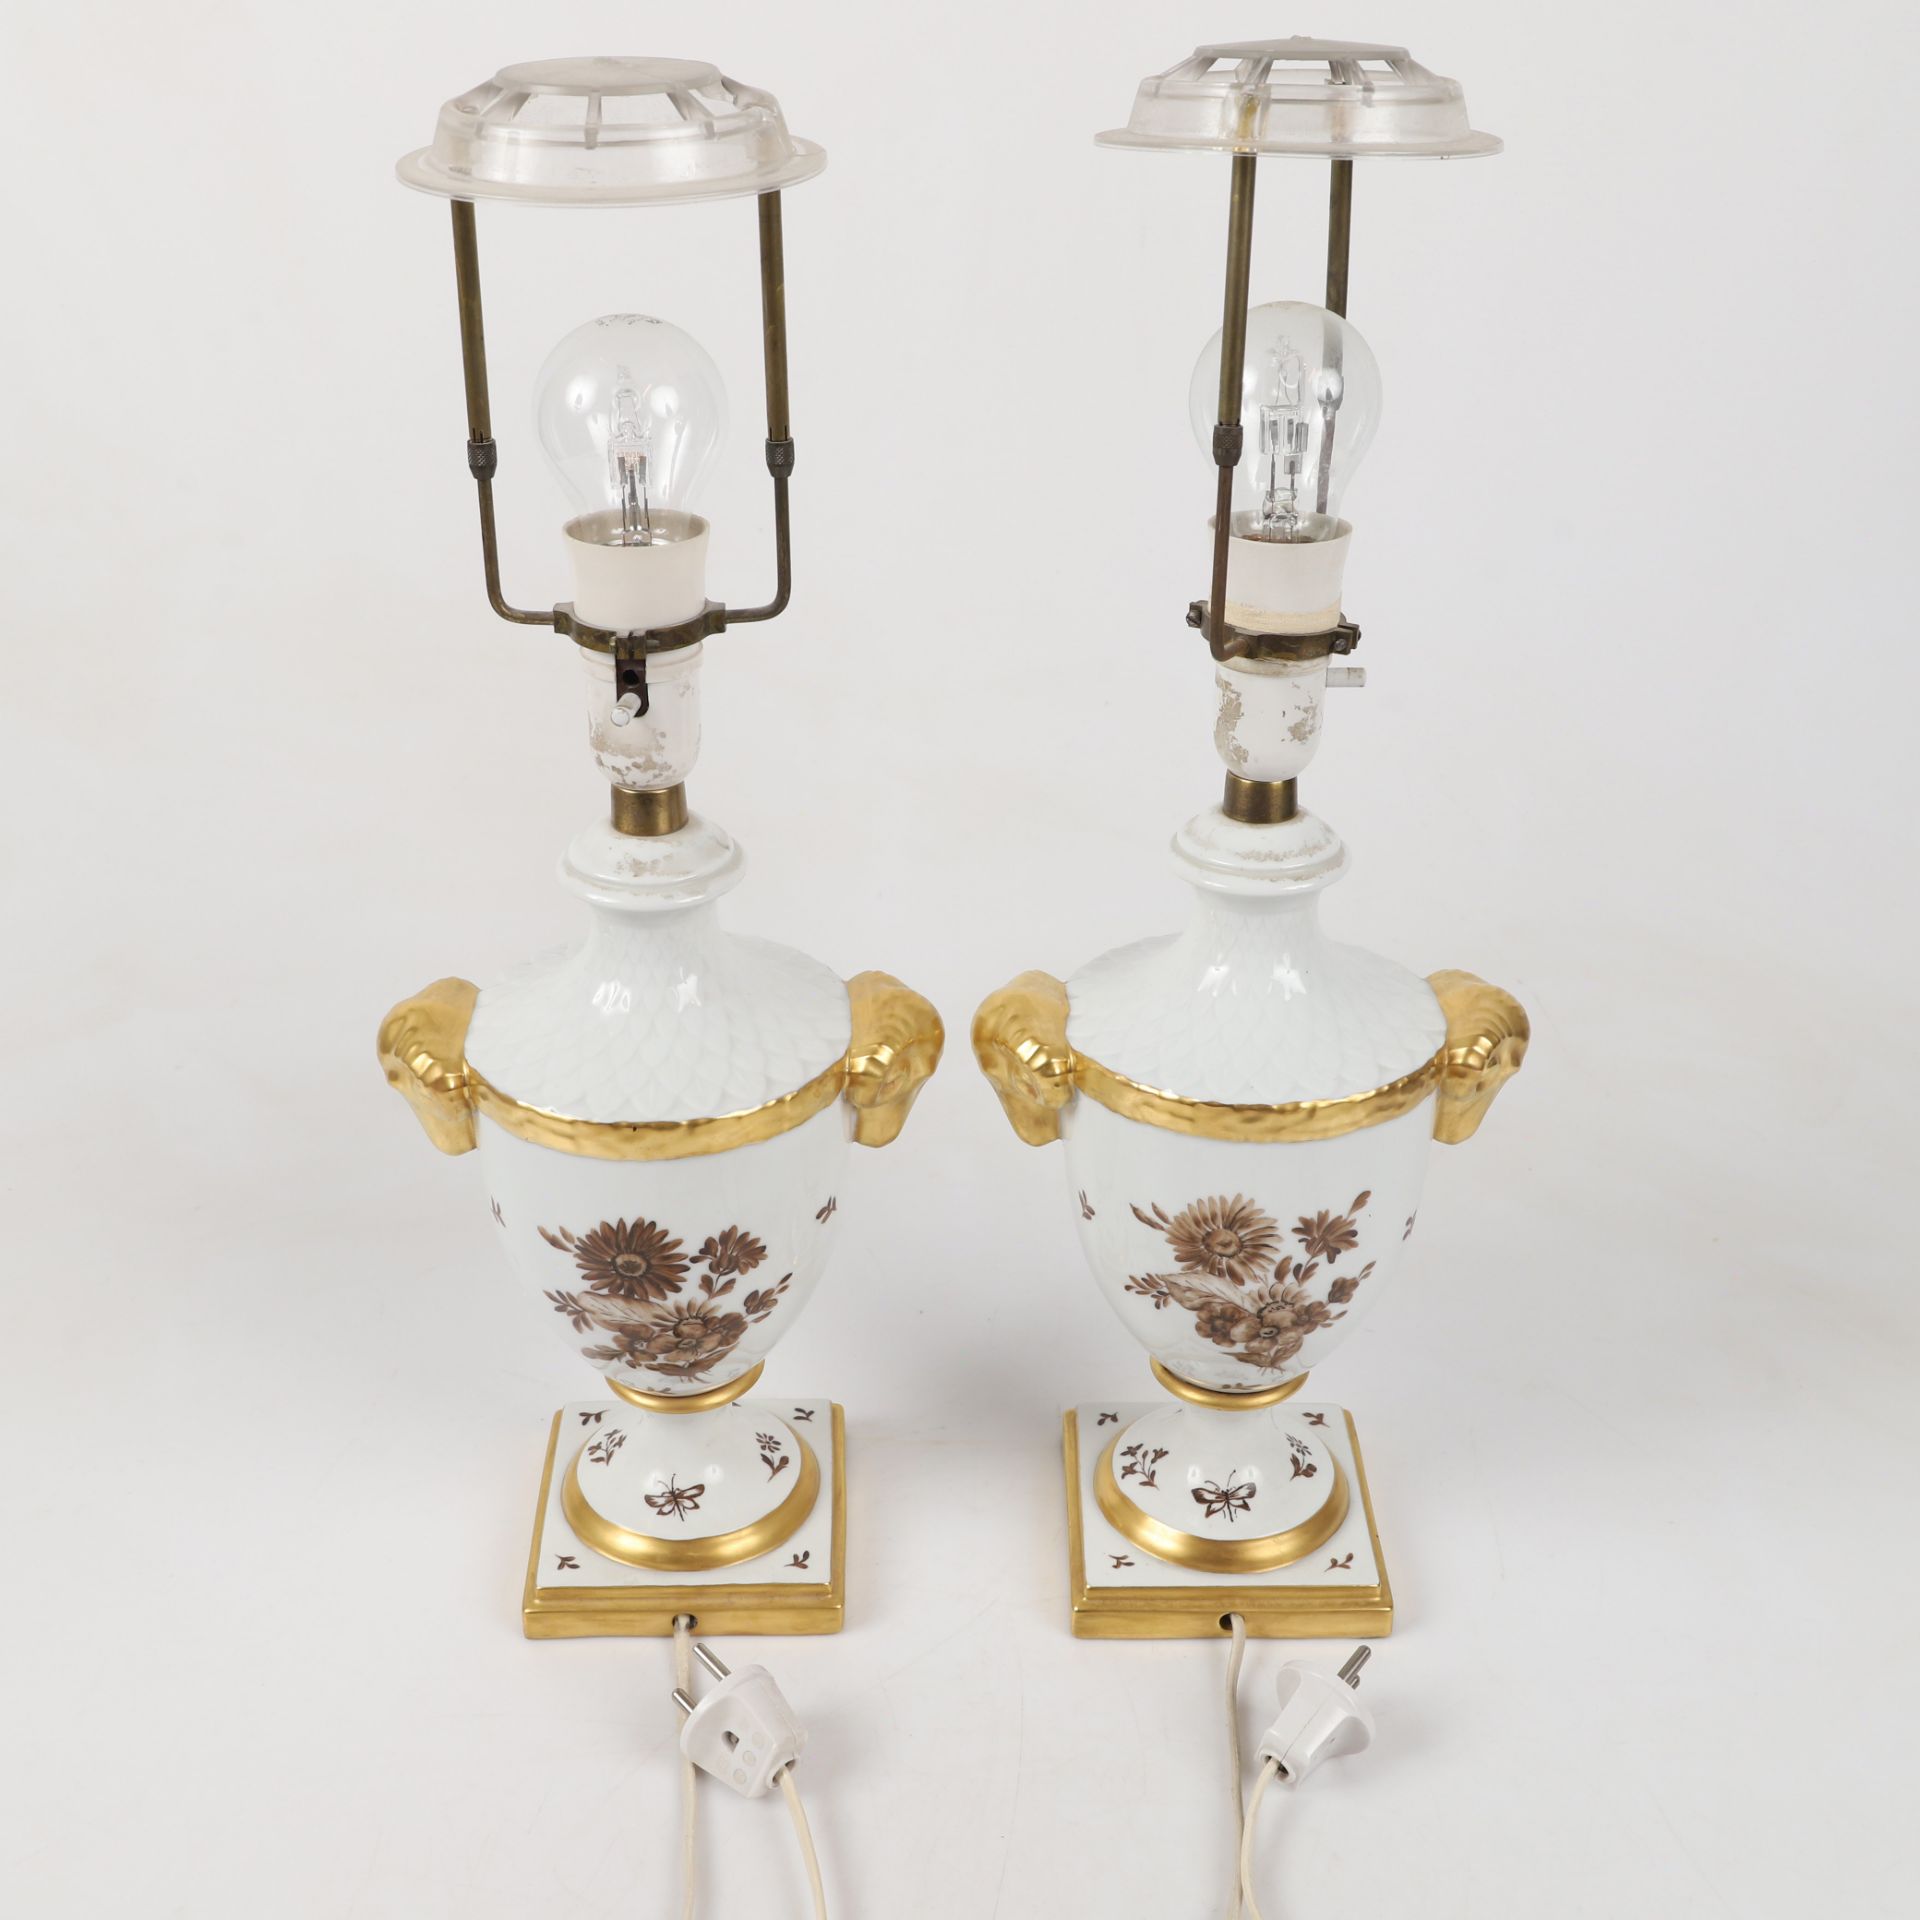 Paar Porzellanlampen feinster Facon. Alboth&Kaiser. Ca. 18 x 12, Höhe 37 cm ohne Schirm. - Bild 2 aus 3